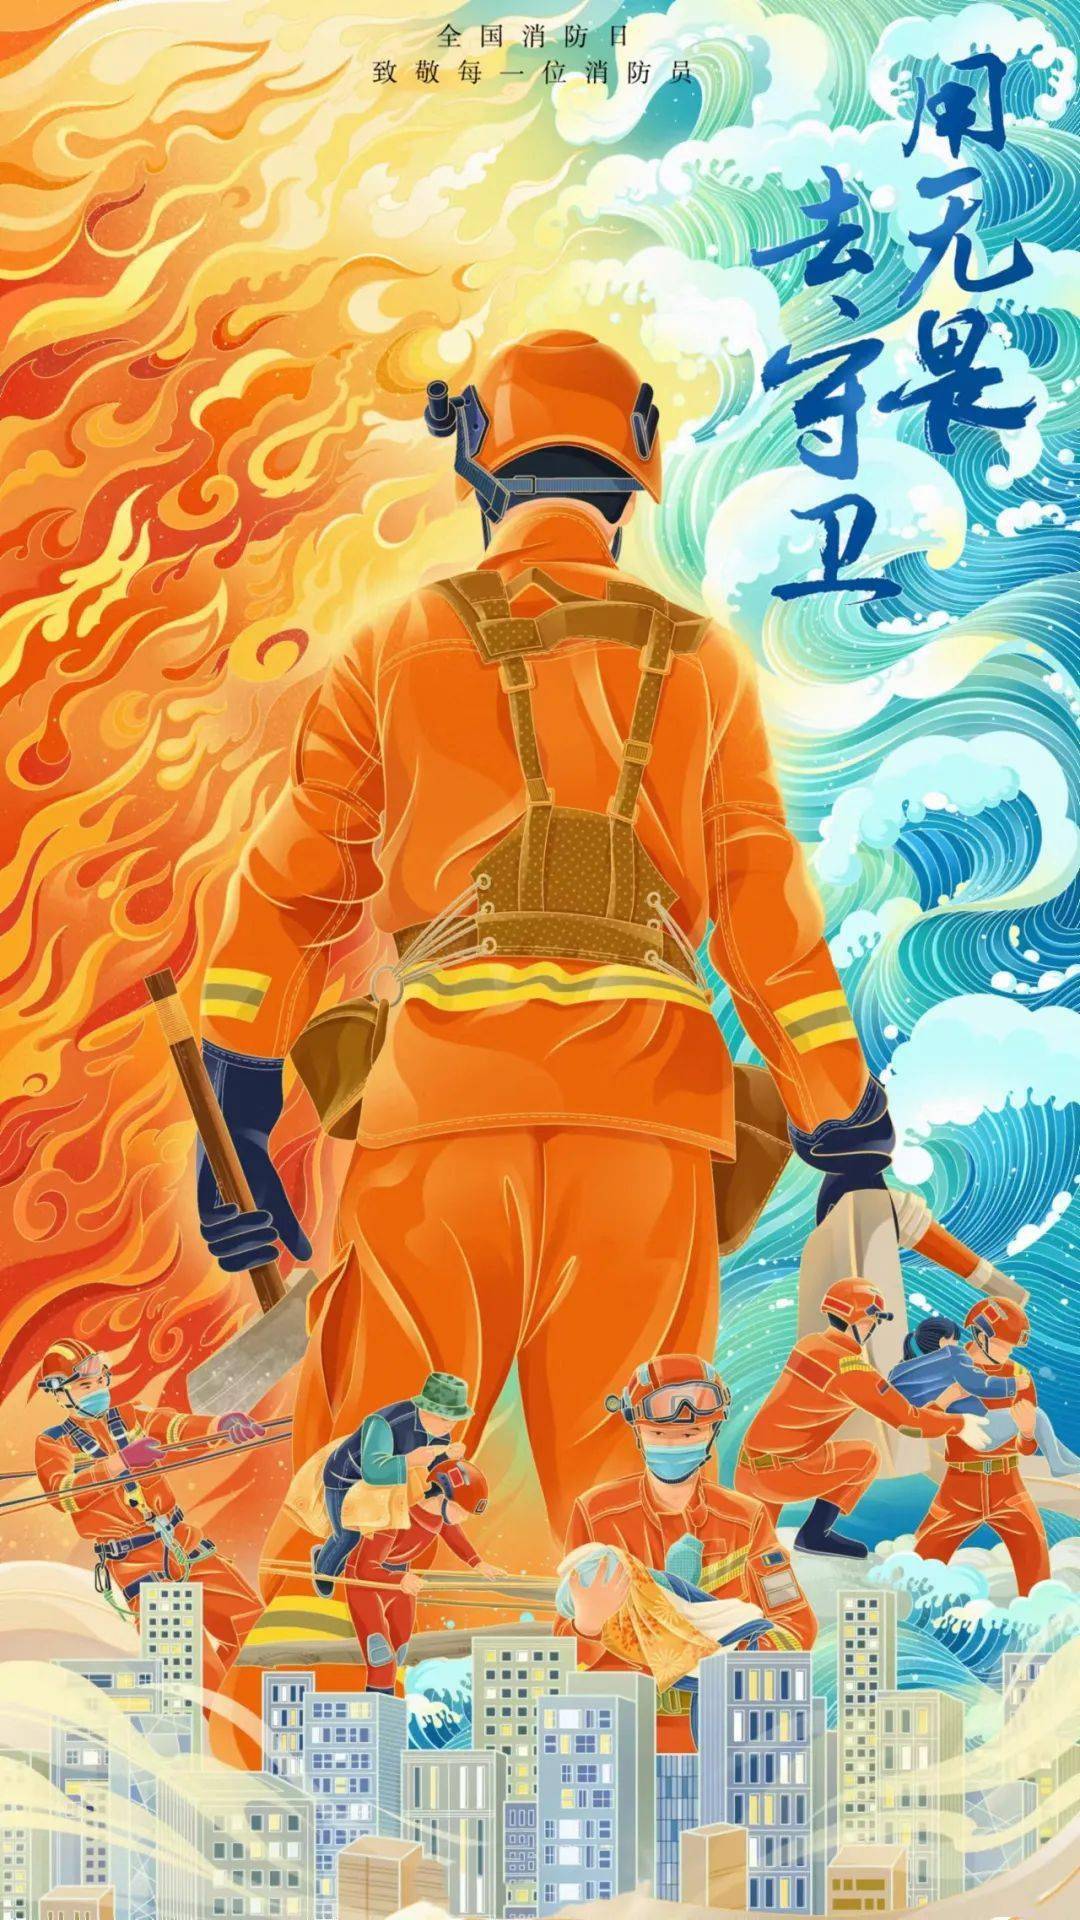 【红岩德育】全国消防日——致敬最美逆行者